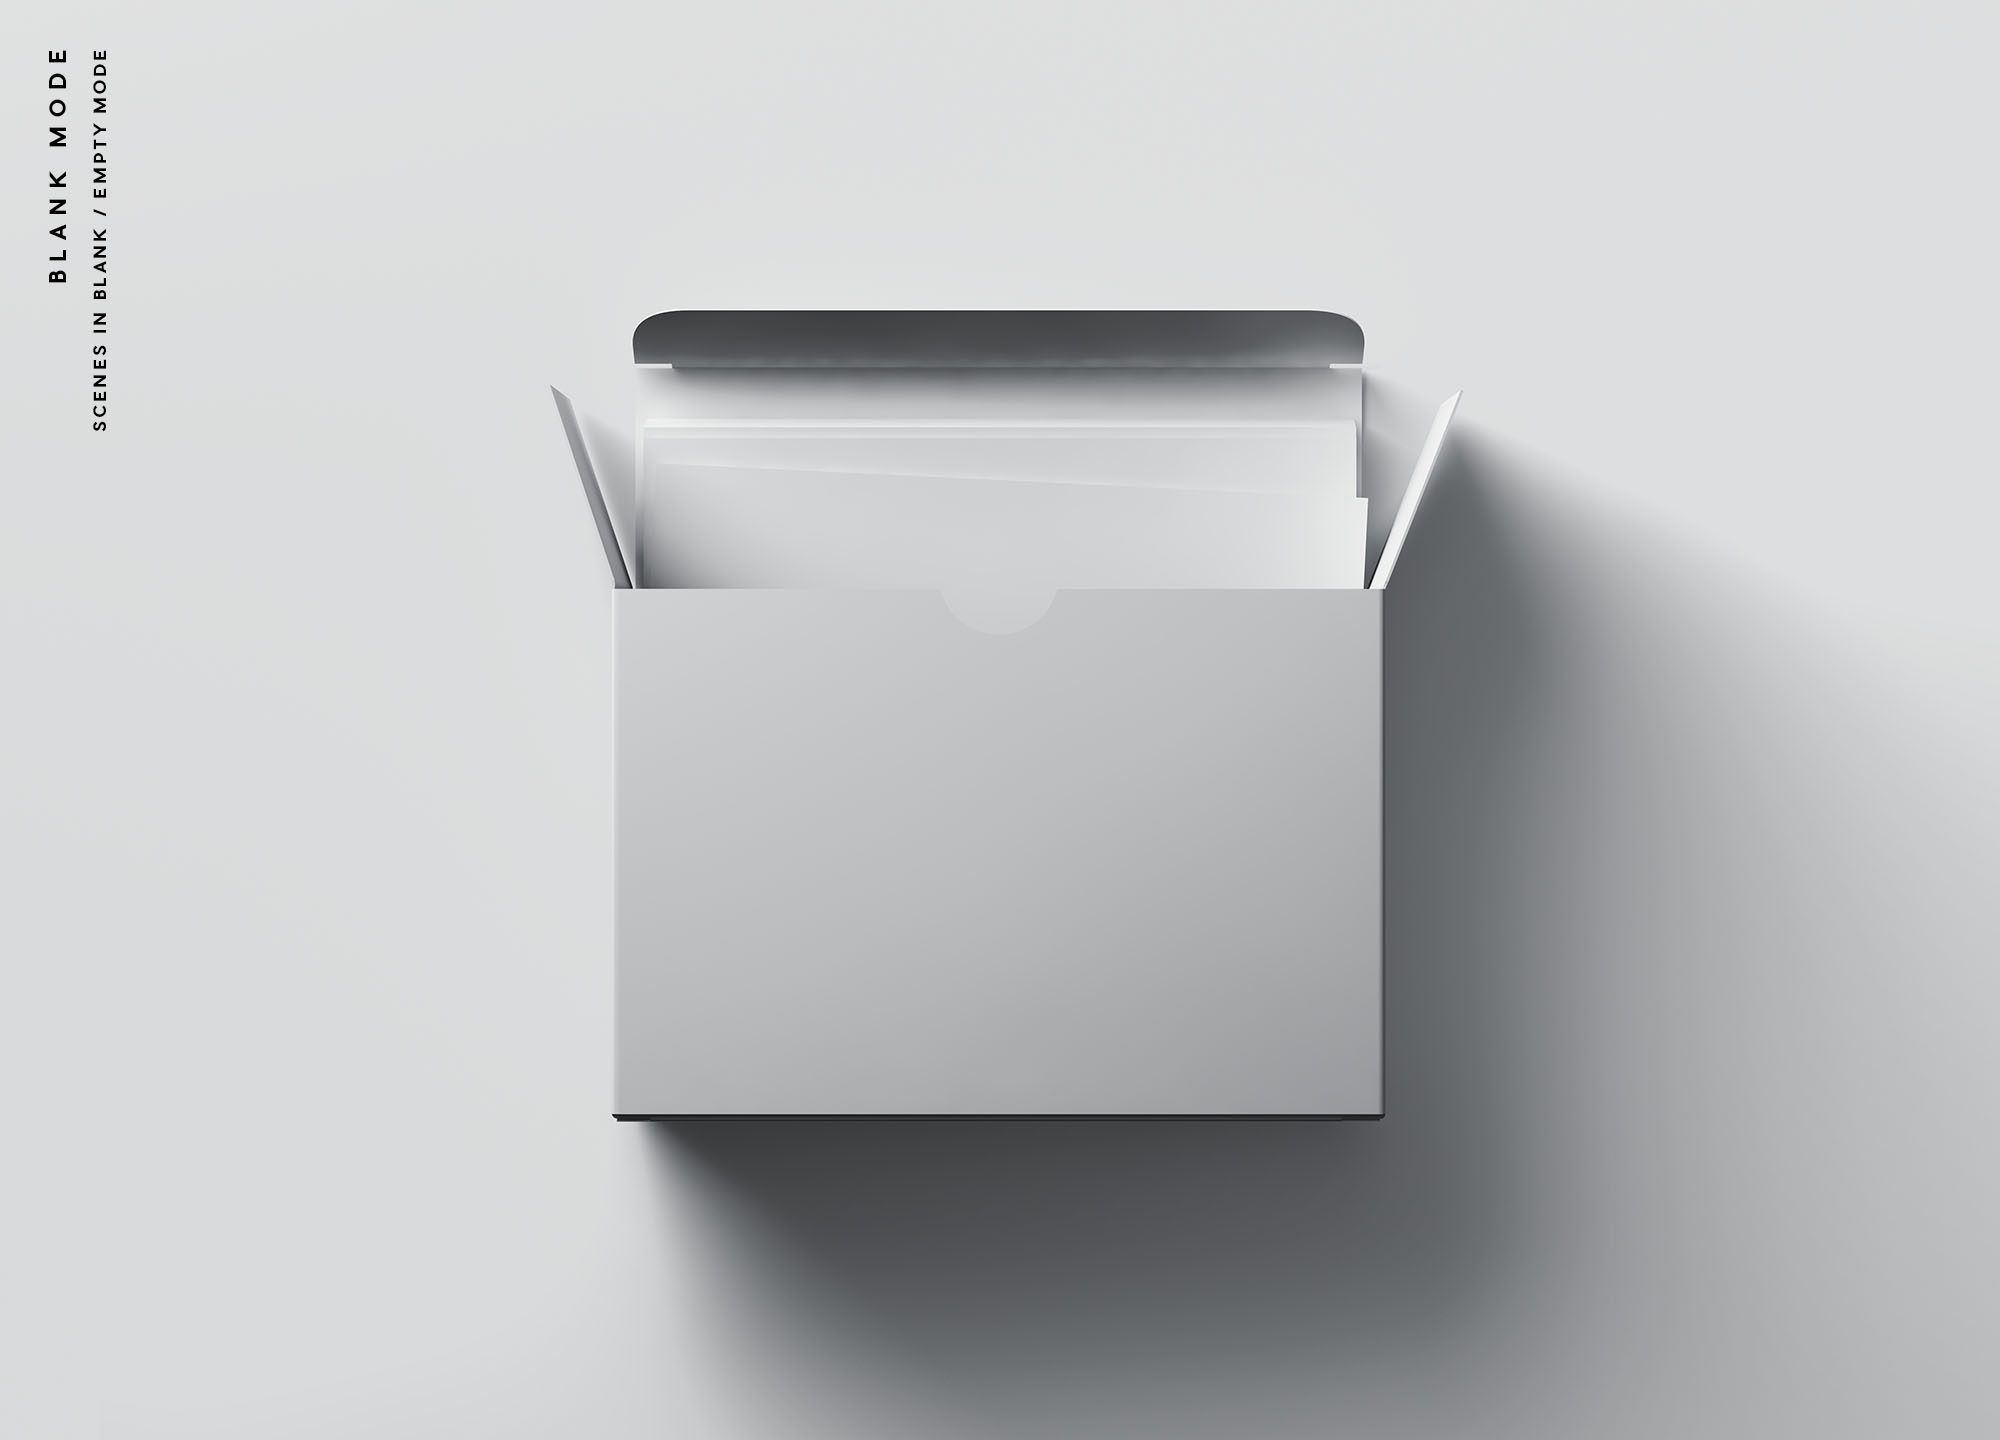 卡片包装盒外观设计效果图蚂蚁素材精选 Card Box Mockup插图(8)